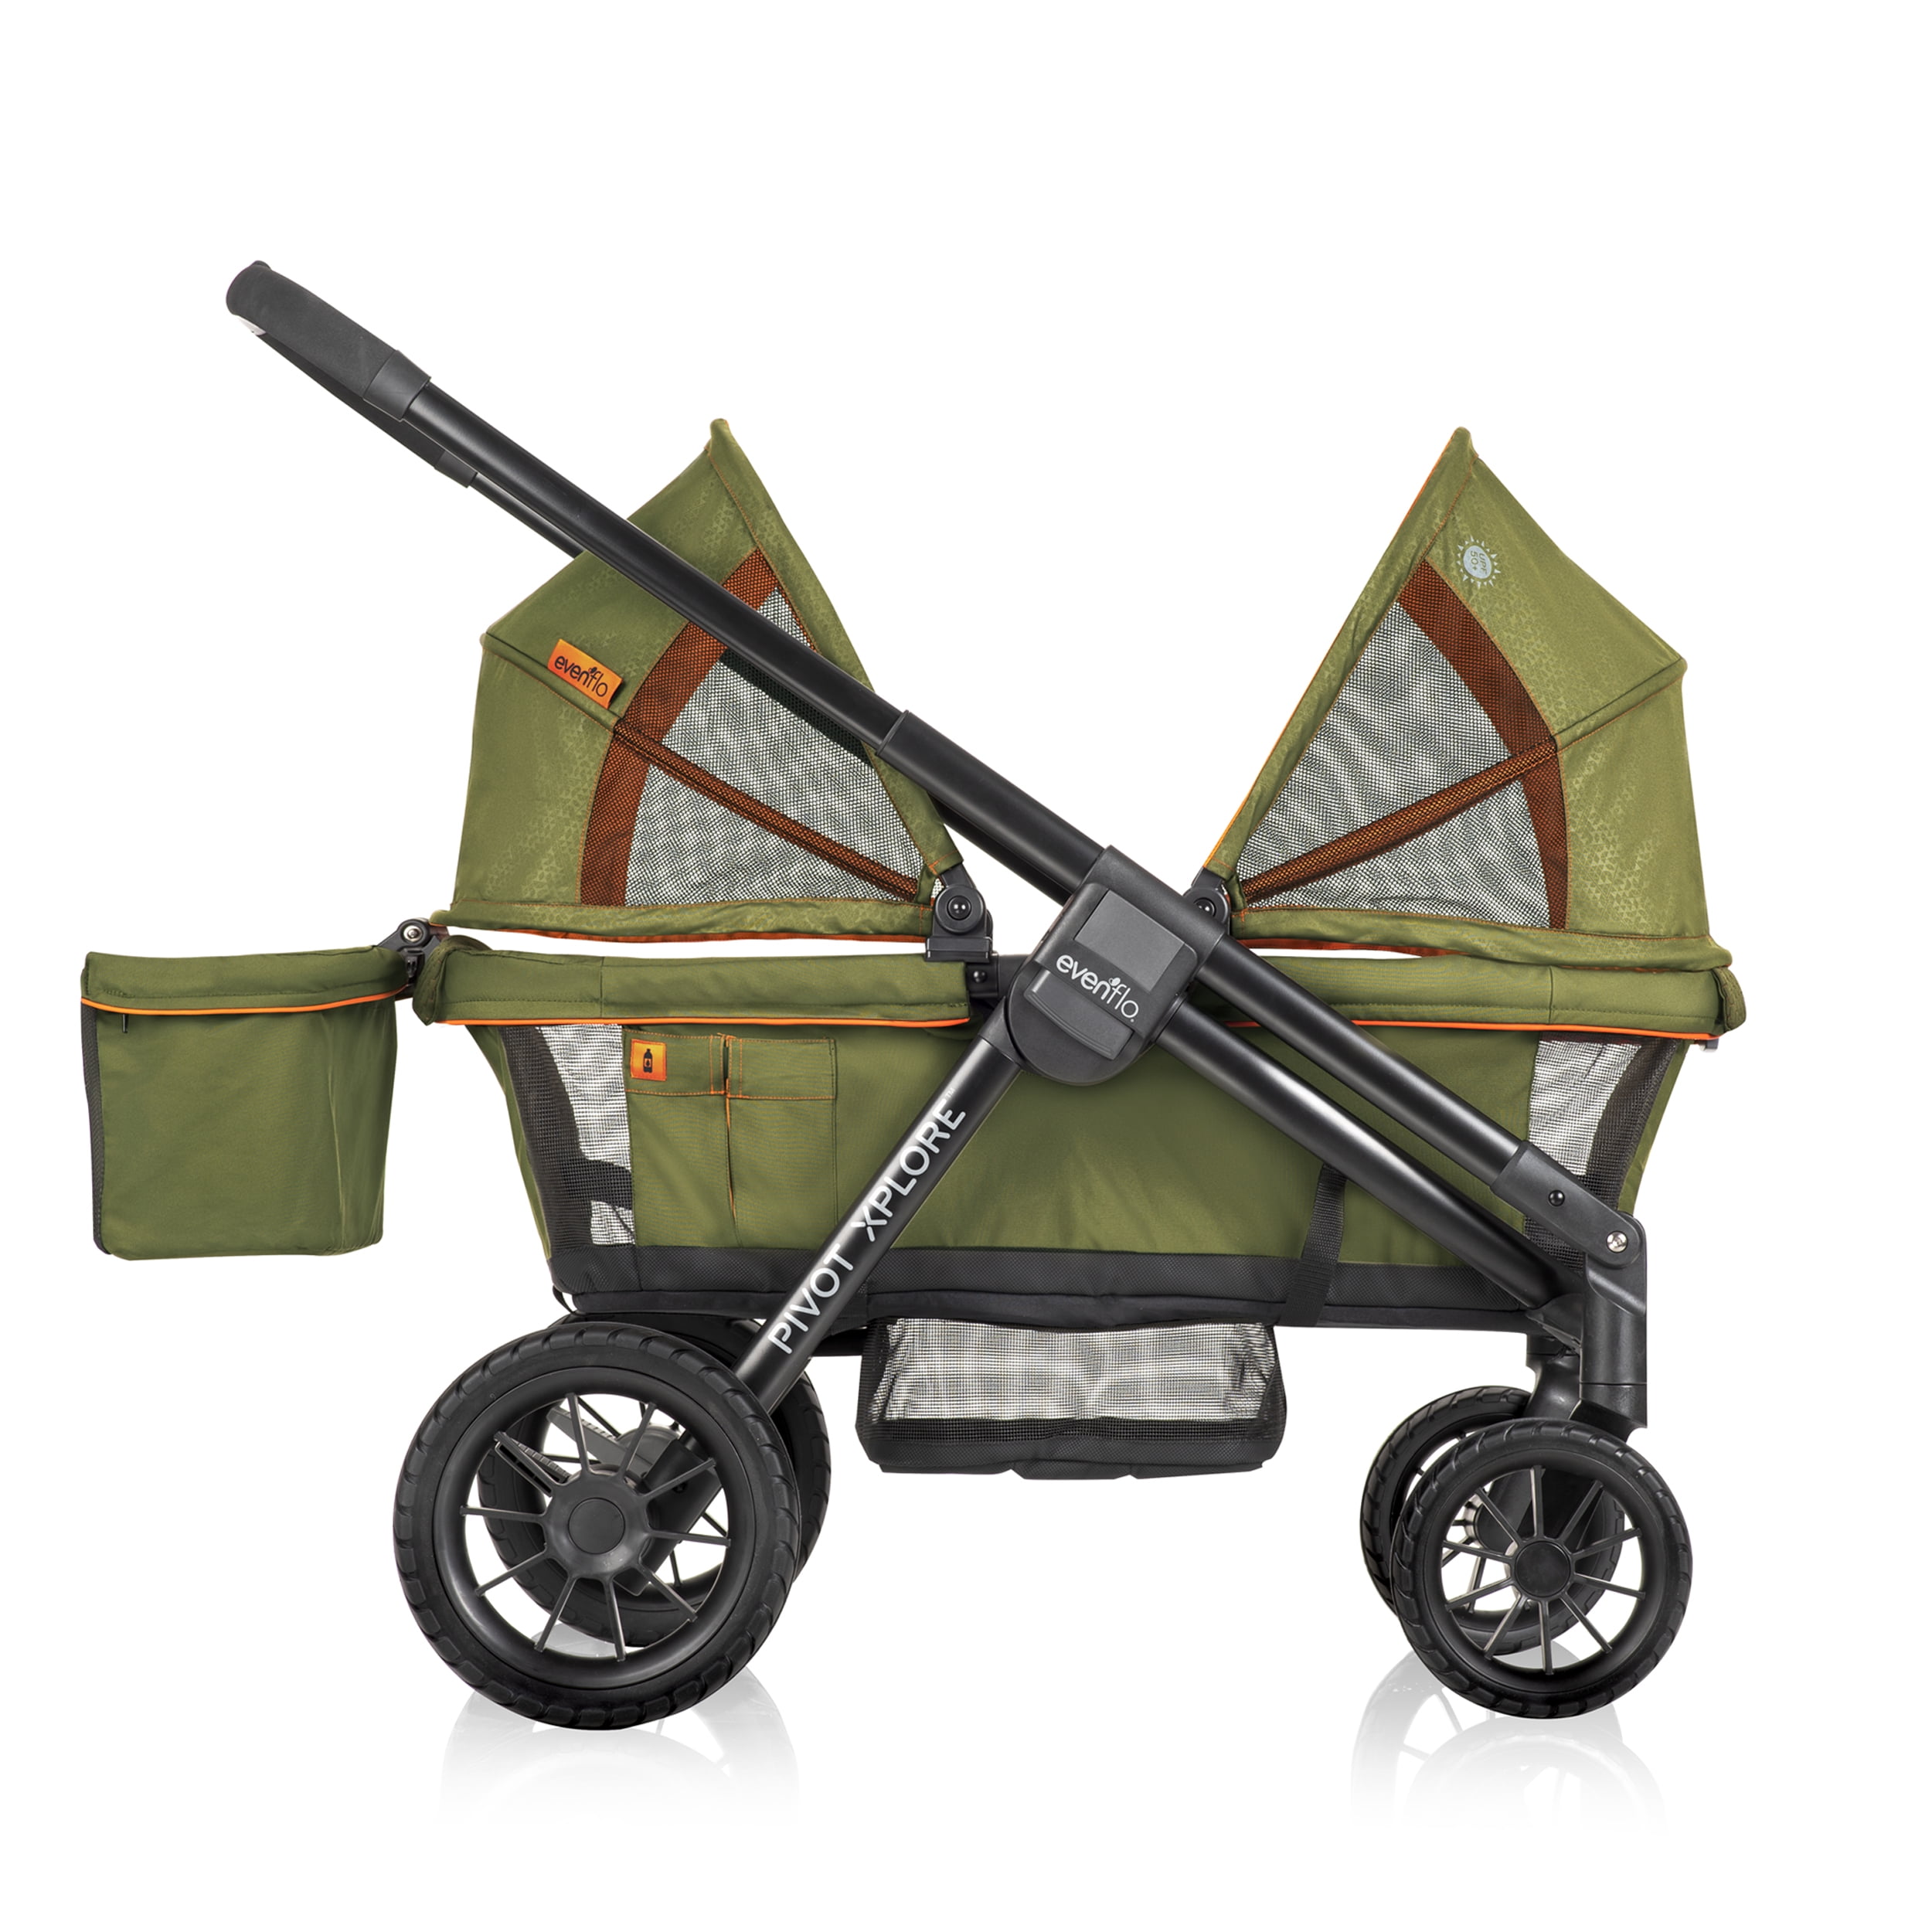 Evenflo Pivot Xplore All-Terrain Stroller Wagon (Ranger Green), Unisex, 6 months - 5 Years - image 1 of 24